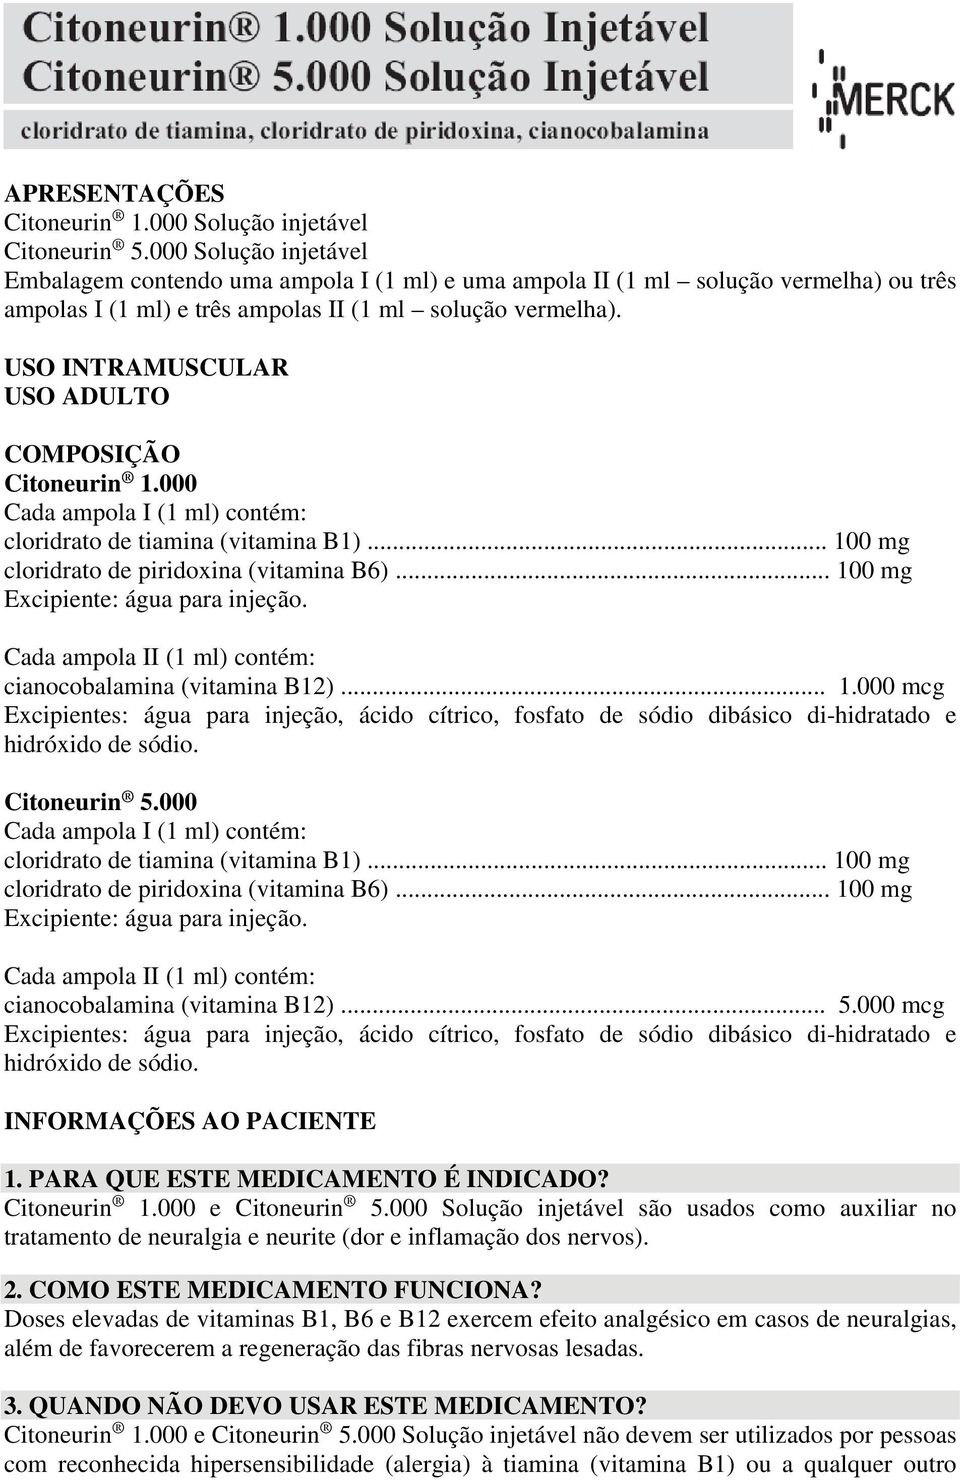 USO INTRAMUSCULAR USO ADULTO COMPOSIÇÃO Citoneurin 1.000 Cada ampola I (1 ml) contém: cloridrato de tiamina (vitamina B1)... 100 mg cloridrato de piridoxina (vitamina B6).